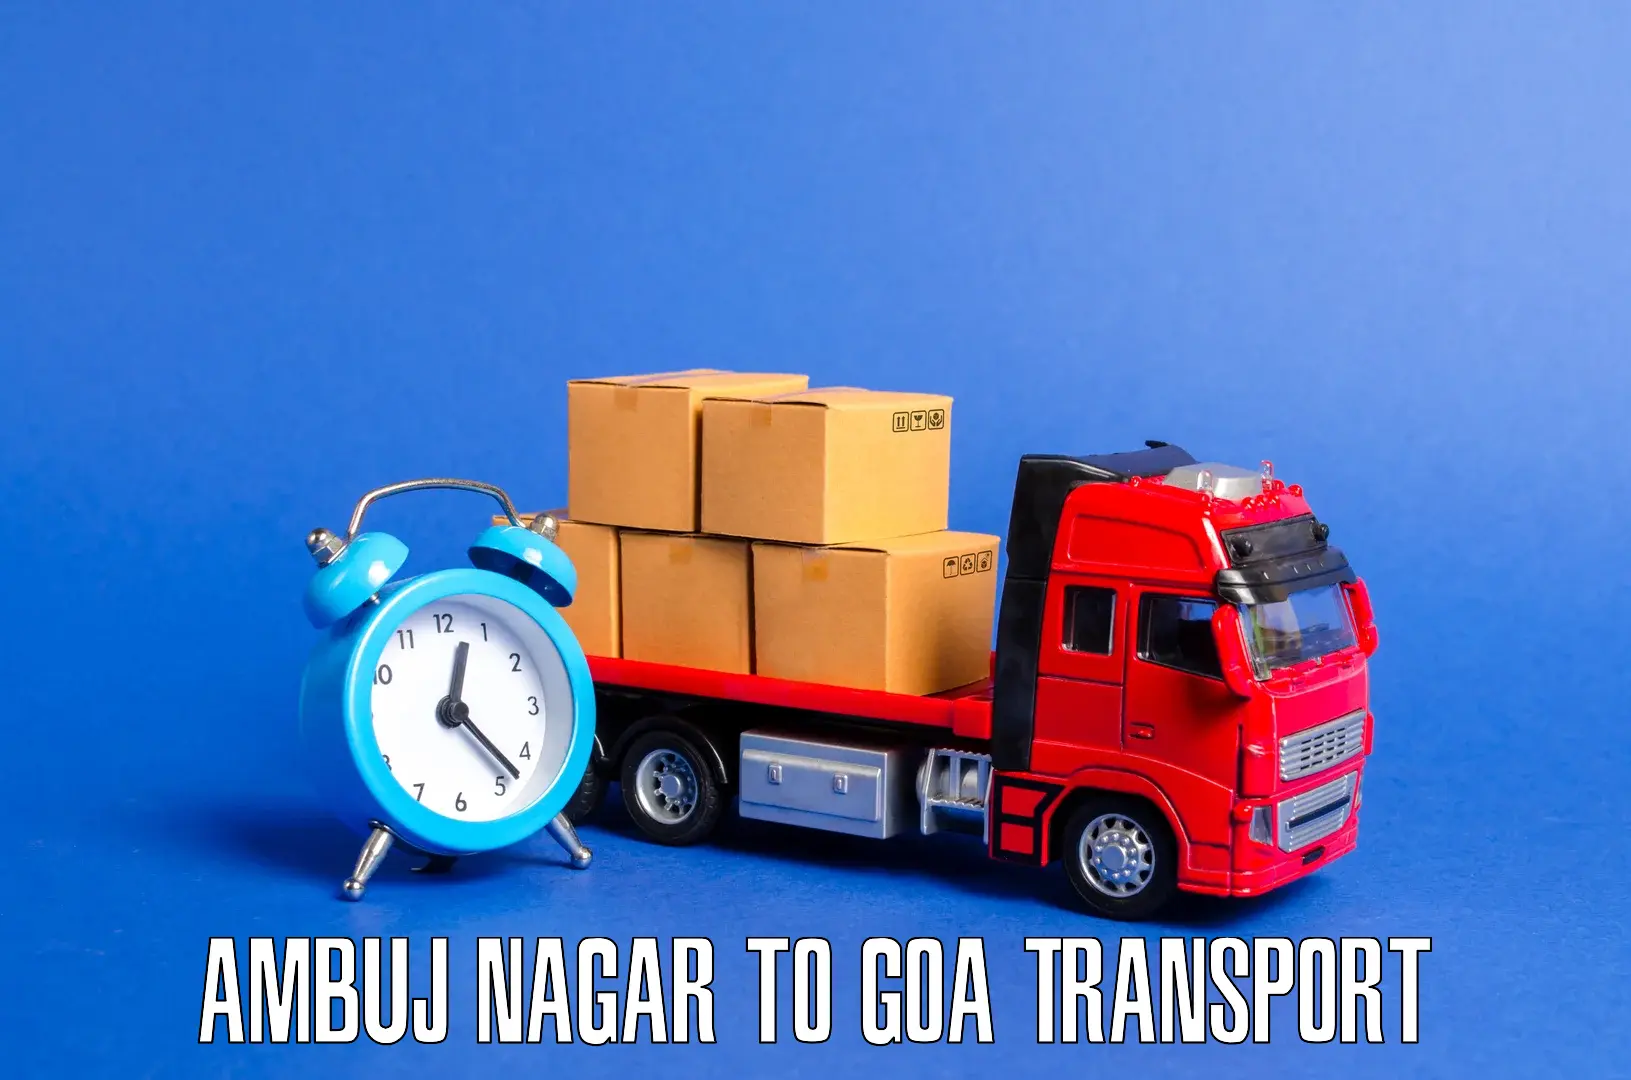 Daily transport service Ambuj Nagar to Canacona